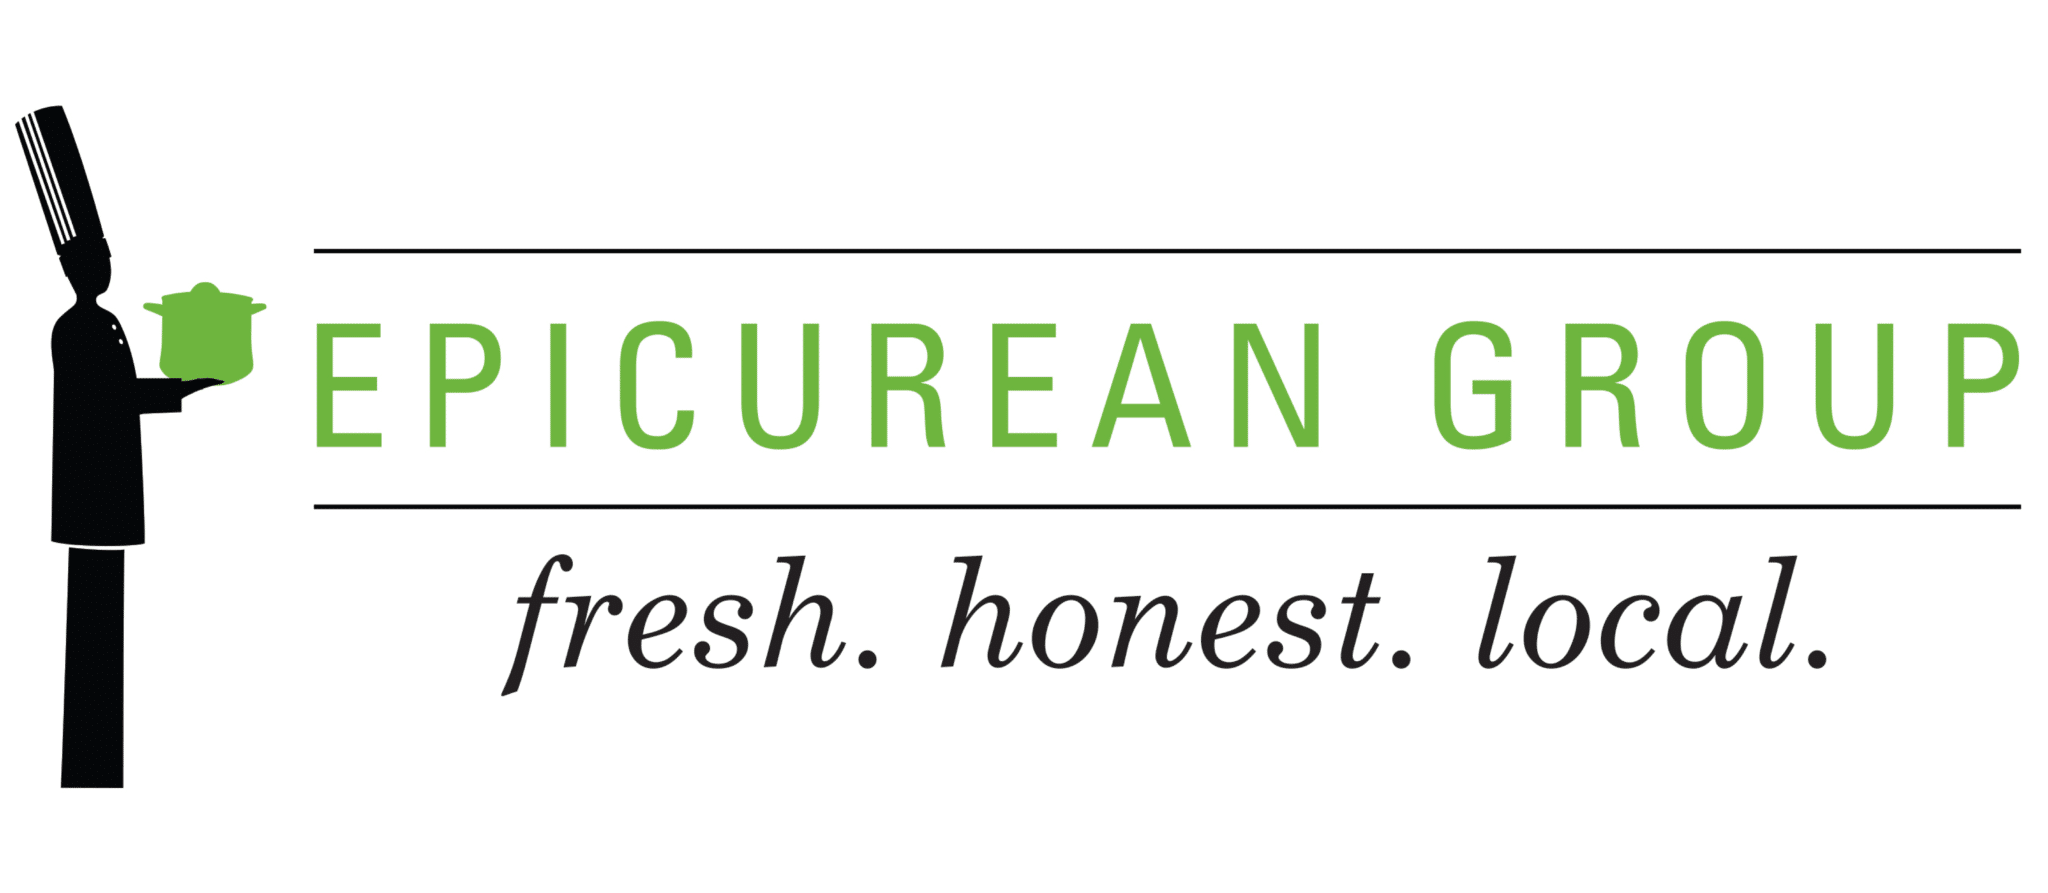 Epicurean Group Logo